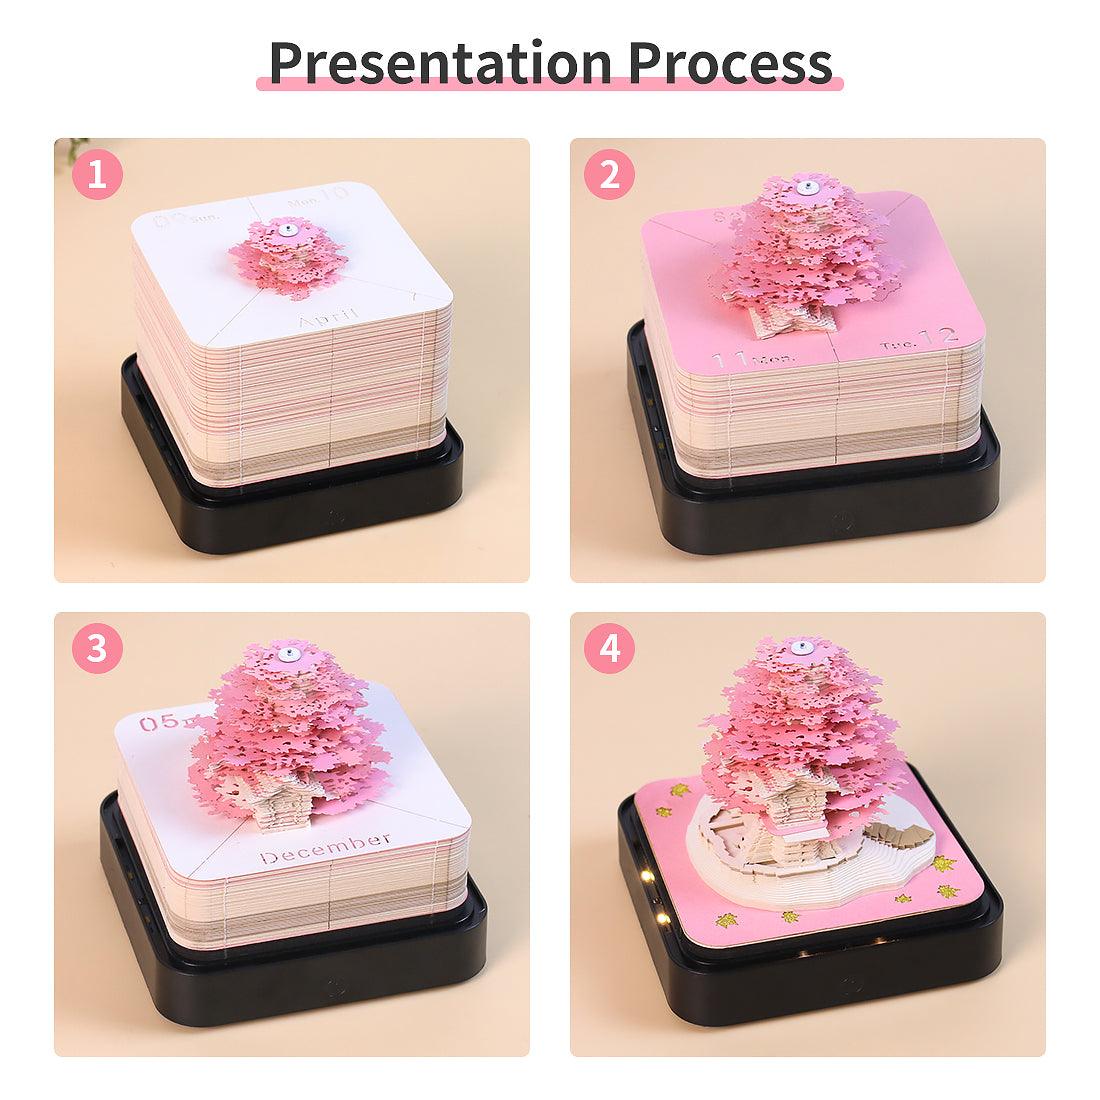 Designer Gift Box Cake | Louis Vuitton Gift Box Cake - YouTube